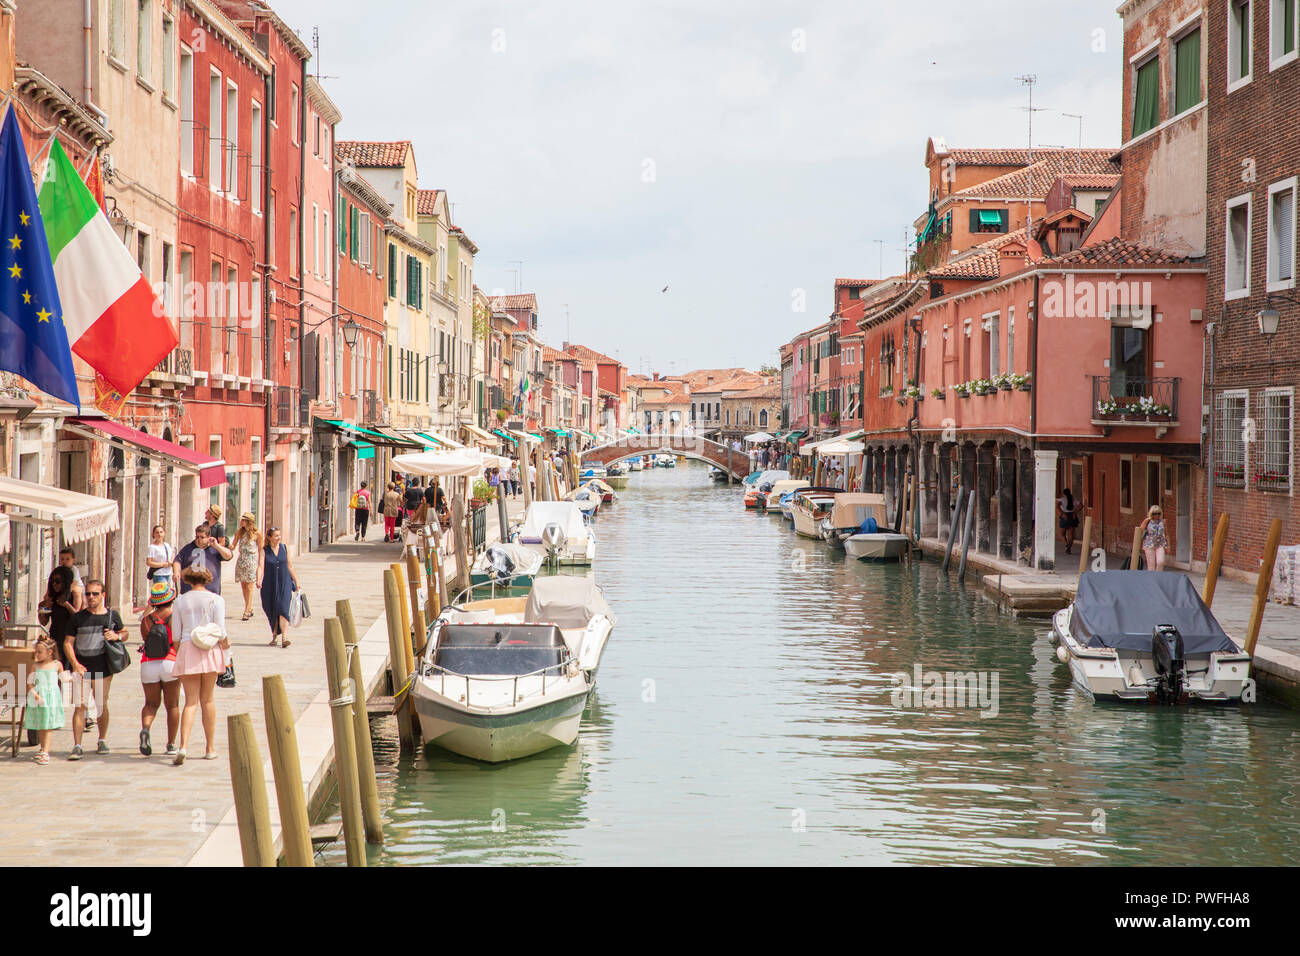 Fondamenta dei Vetrai, einer der wichtigsten Straßen auf der Insel Murano, Venedig, Italien. Stockfoto